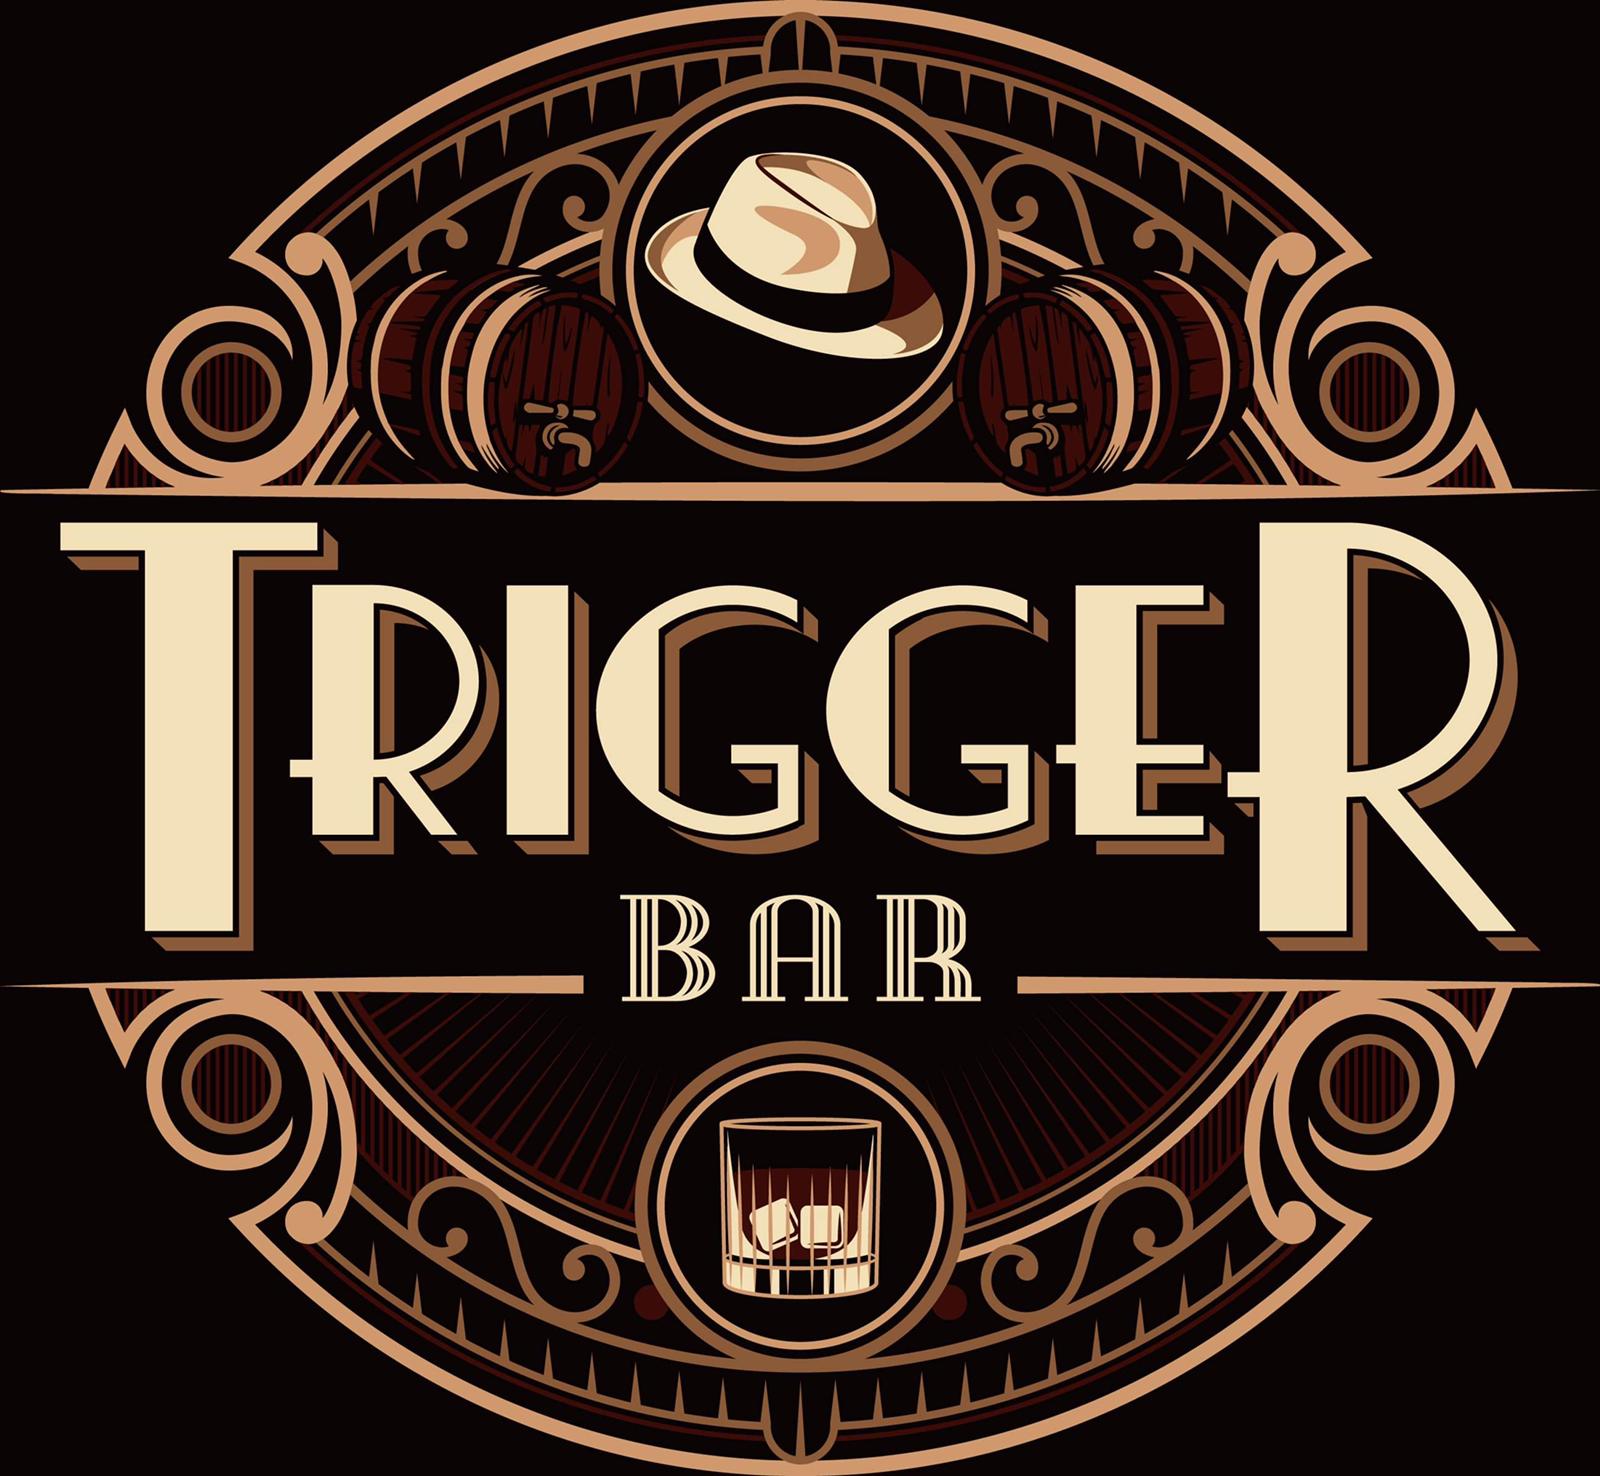 Trigger Bar